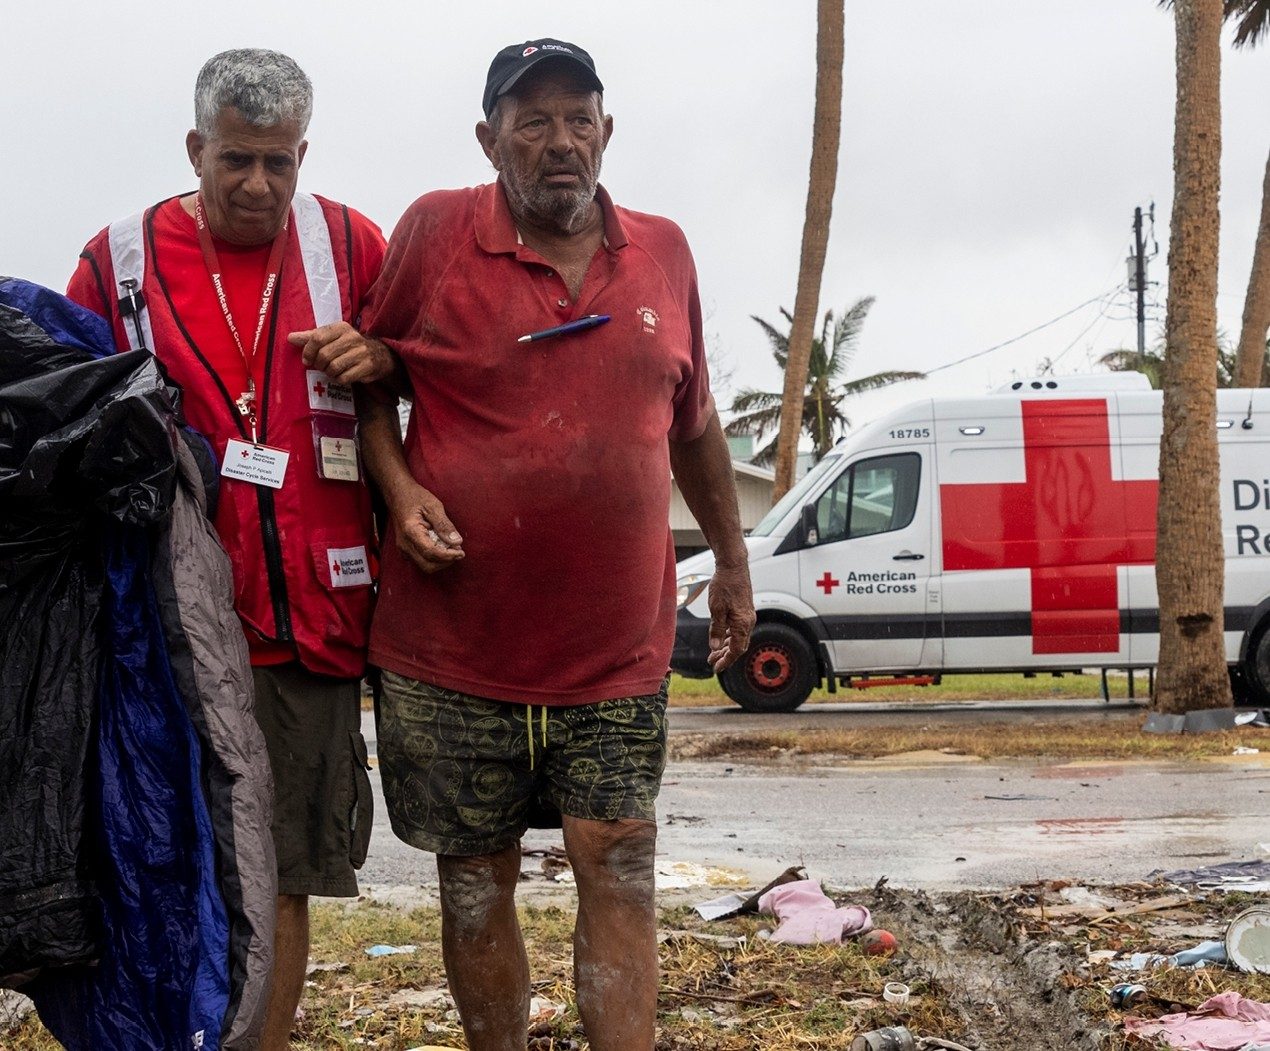 A Red Cross volunteer helps an injured older man walk